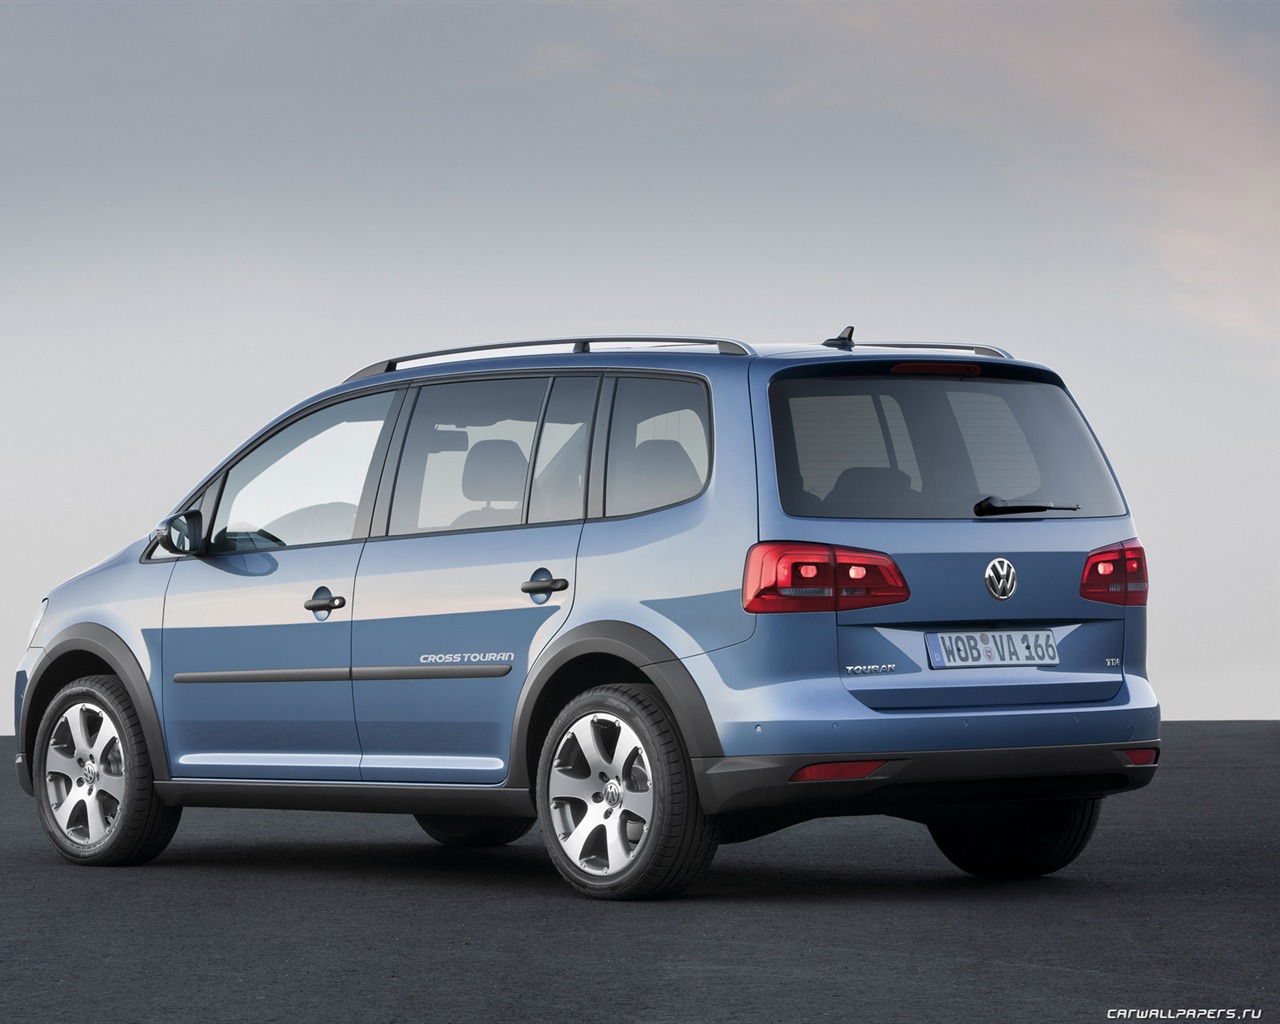 Volkswagen CrossTouran - 2010 fonds d'écran HD #7 - 1280x1024